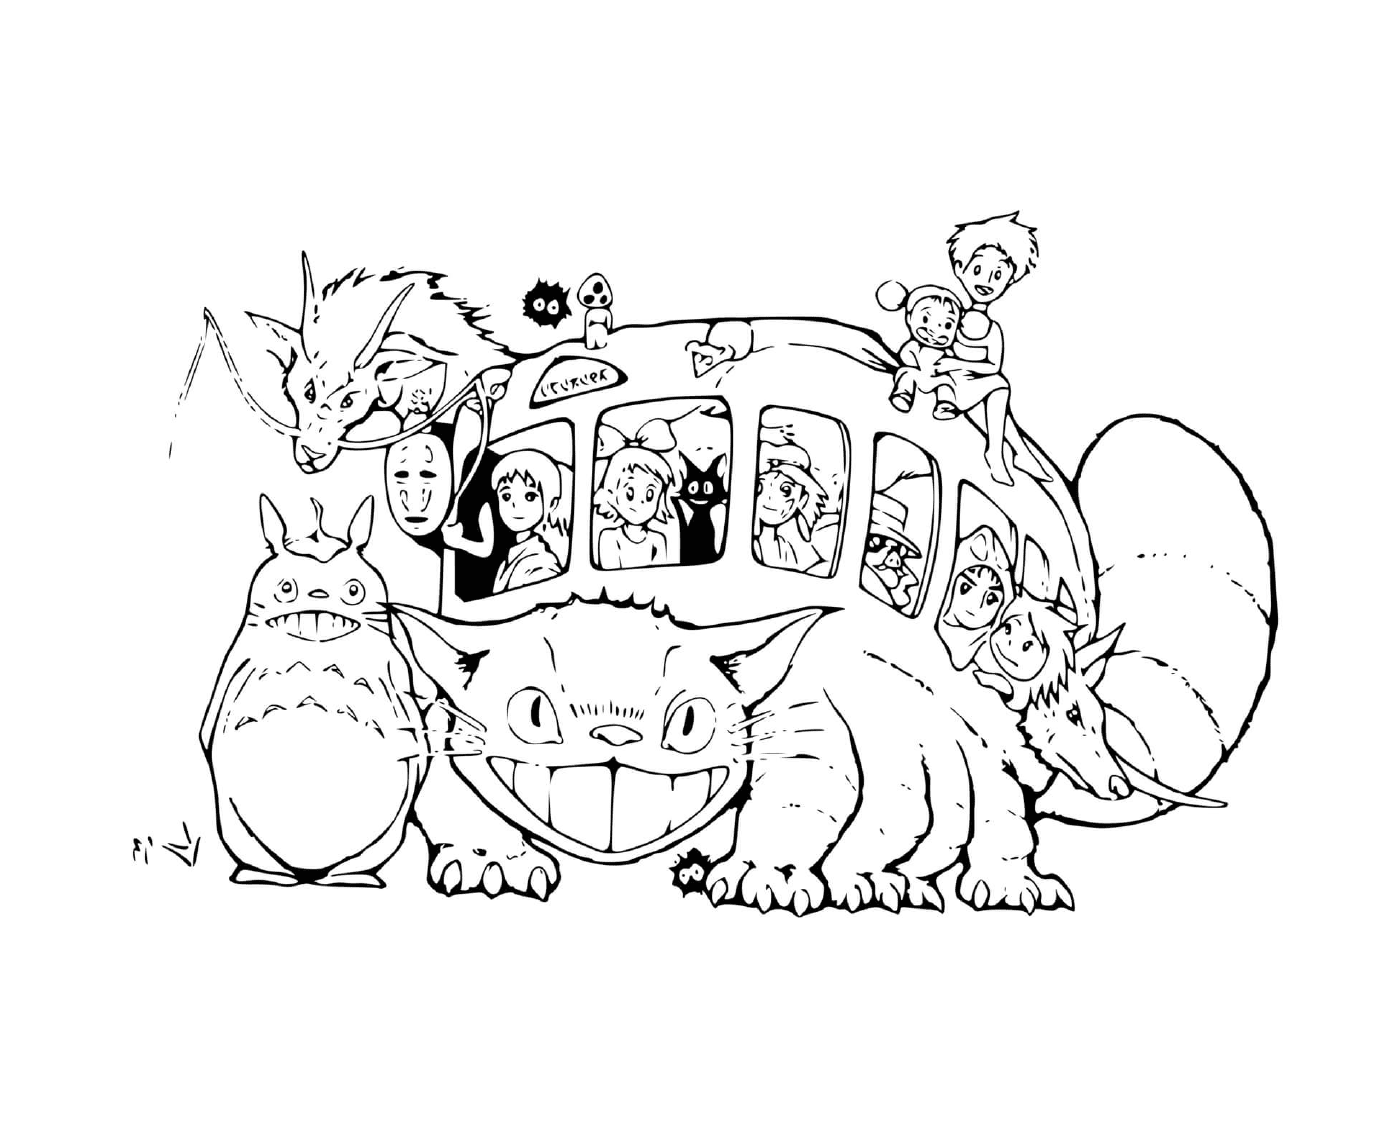   Bus en forme de chat par Studio Ghibli 